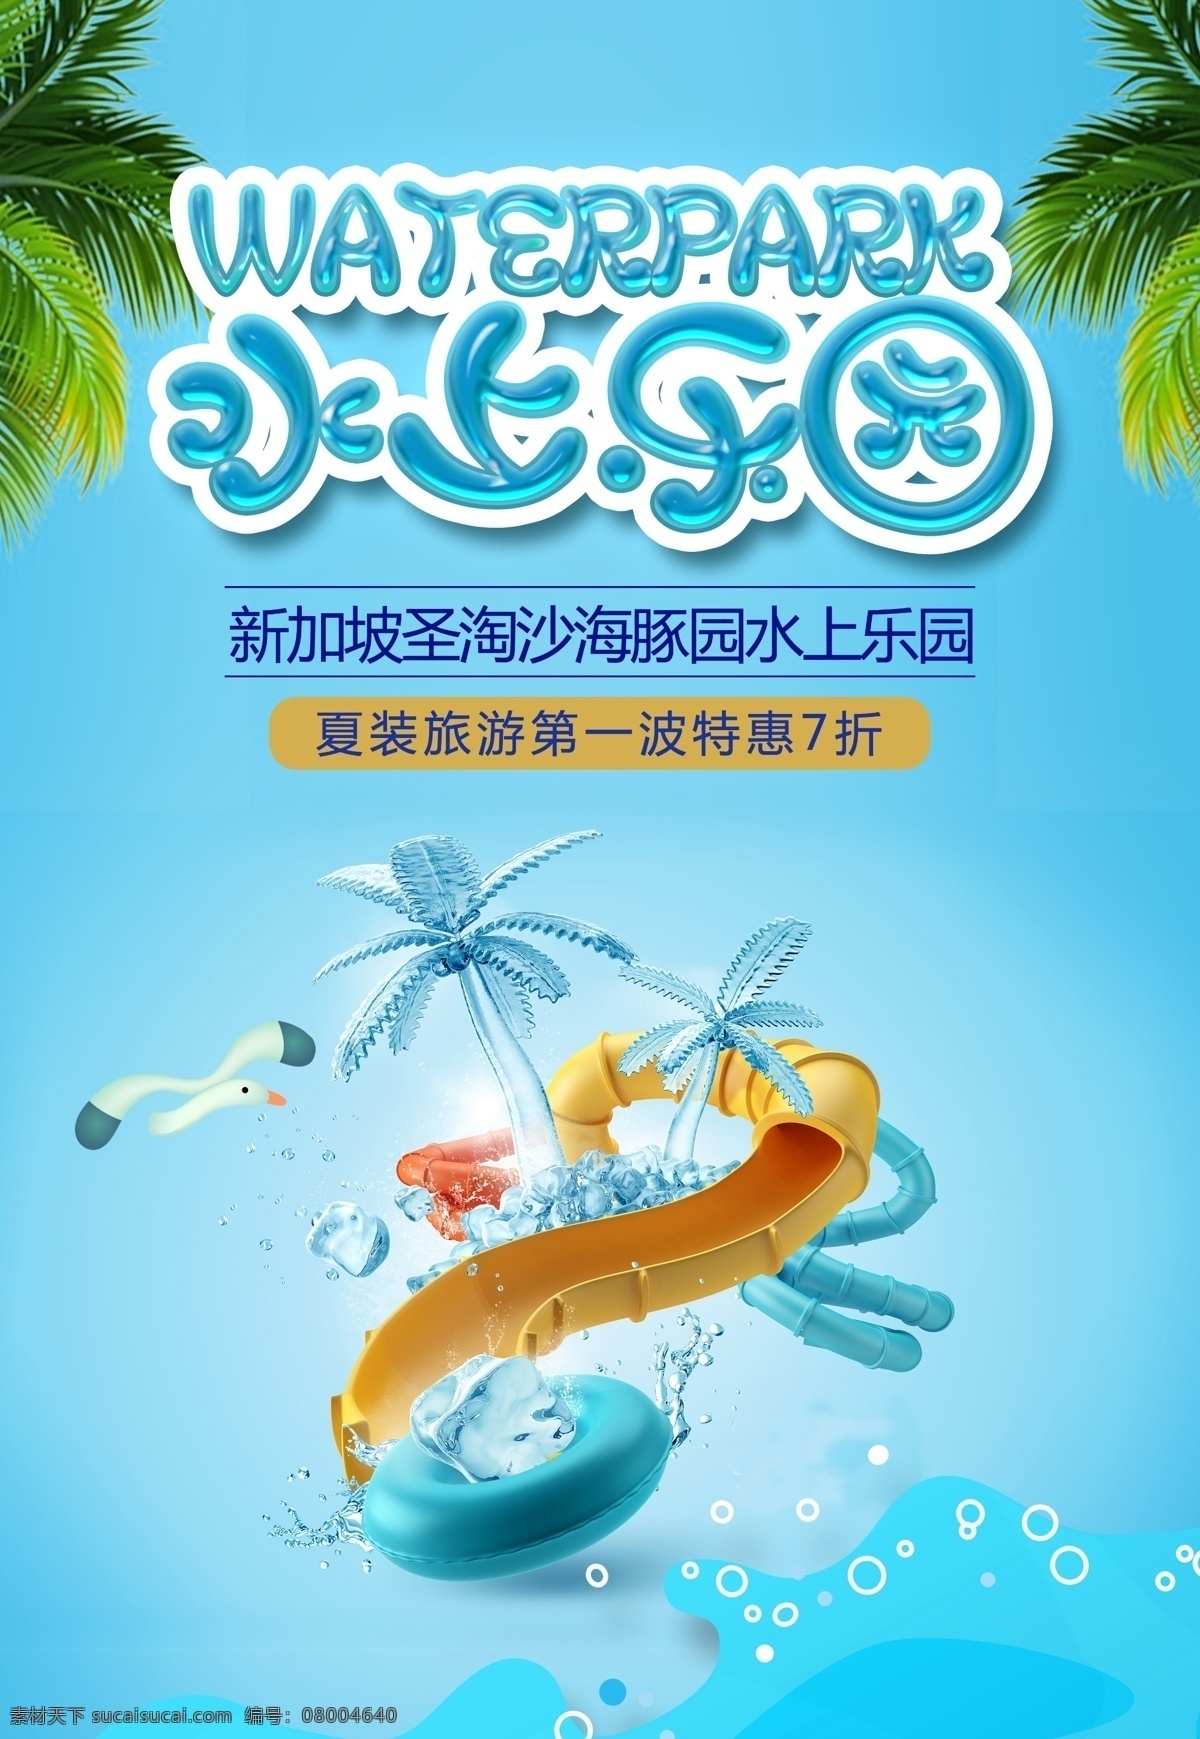 水世界广告 水上乐园 水世界 游乐场 玩水 夏季